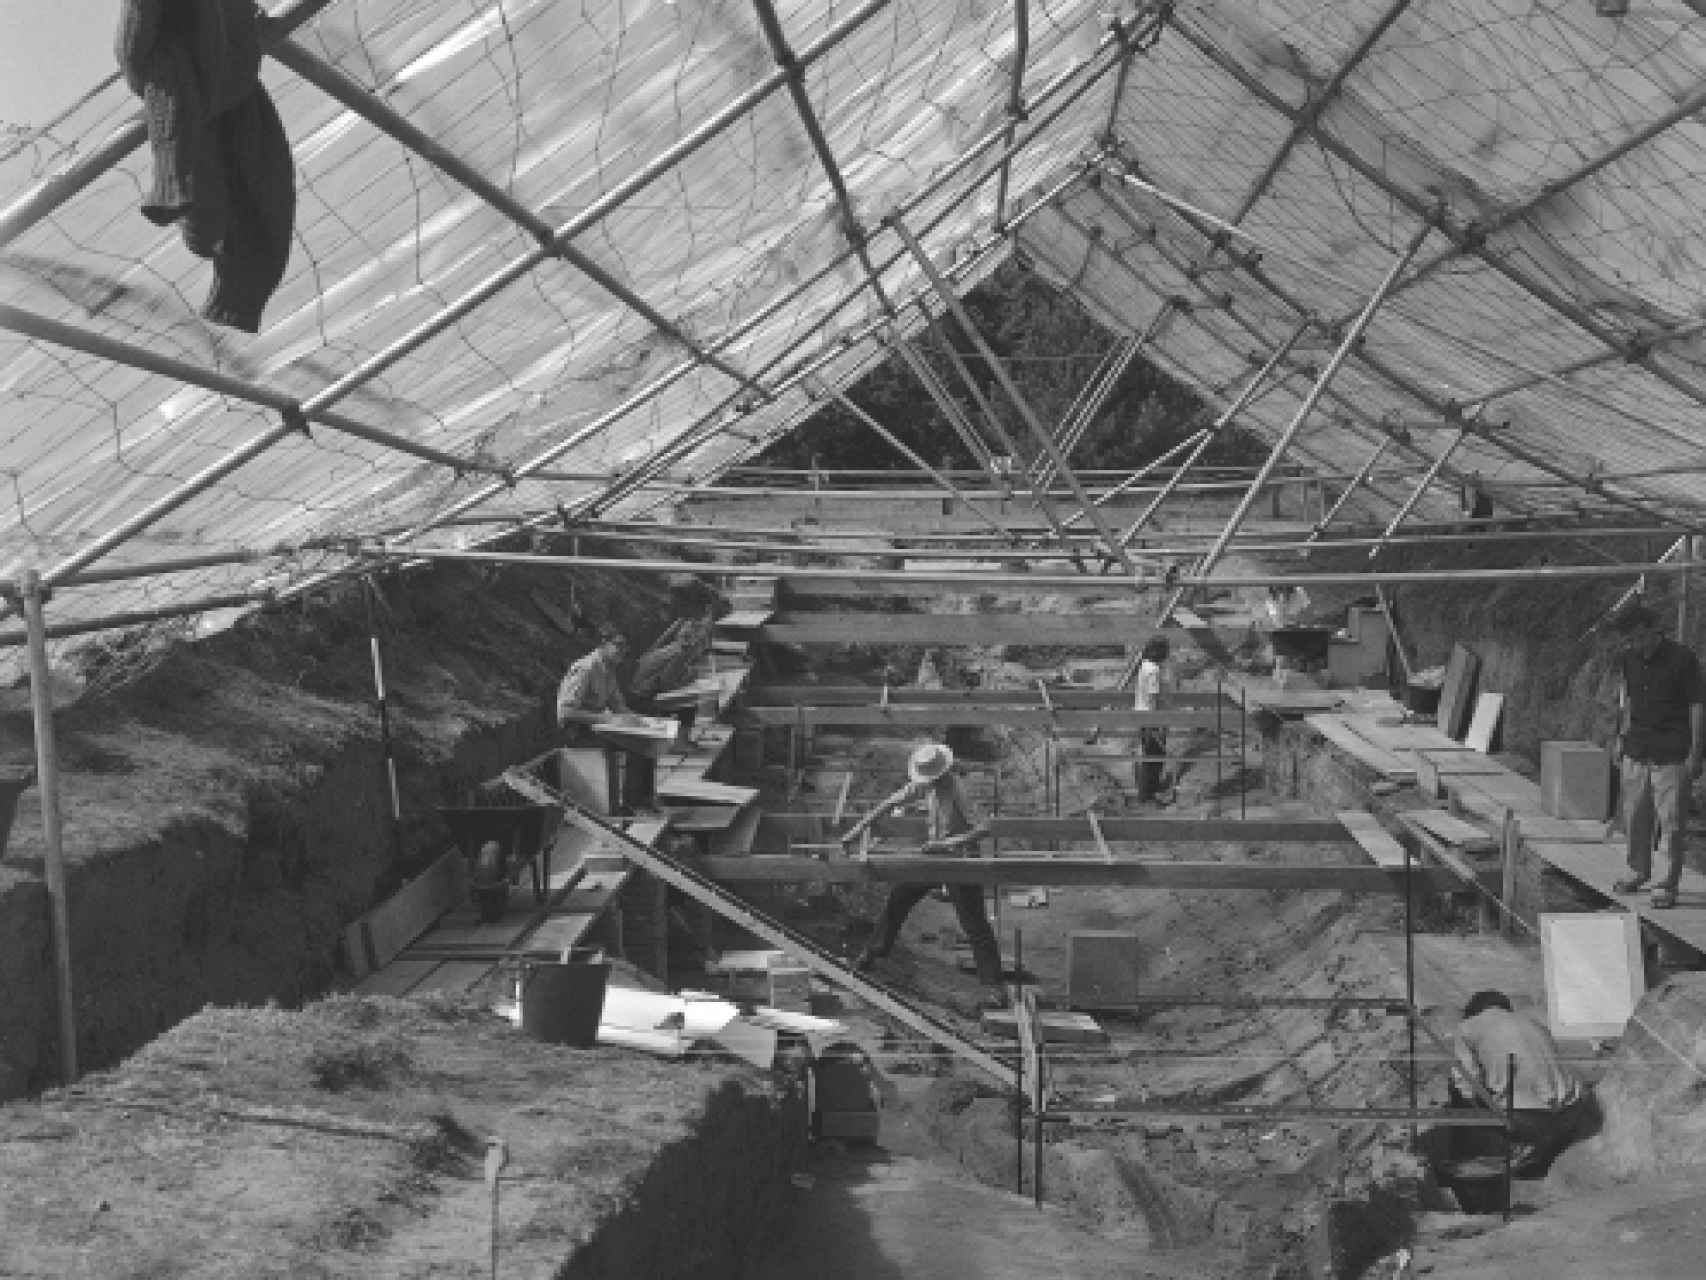 Excavaciones en Sutton Hoo en 1966. Los arqueólogos levantaron una estructura una gran techumbre para proteger y trabajar mejor en el sitio.